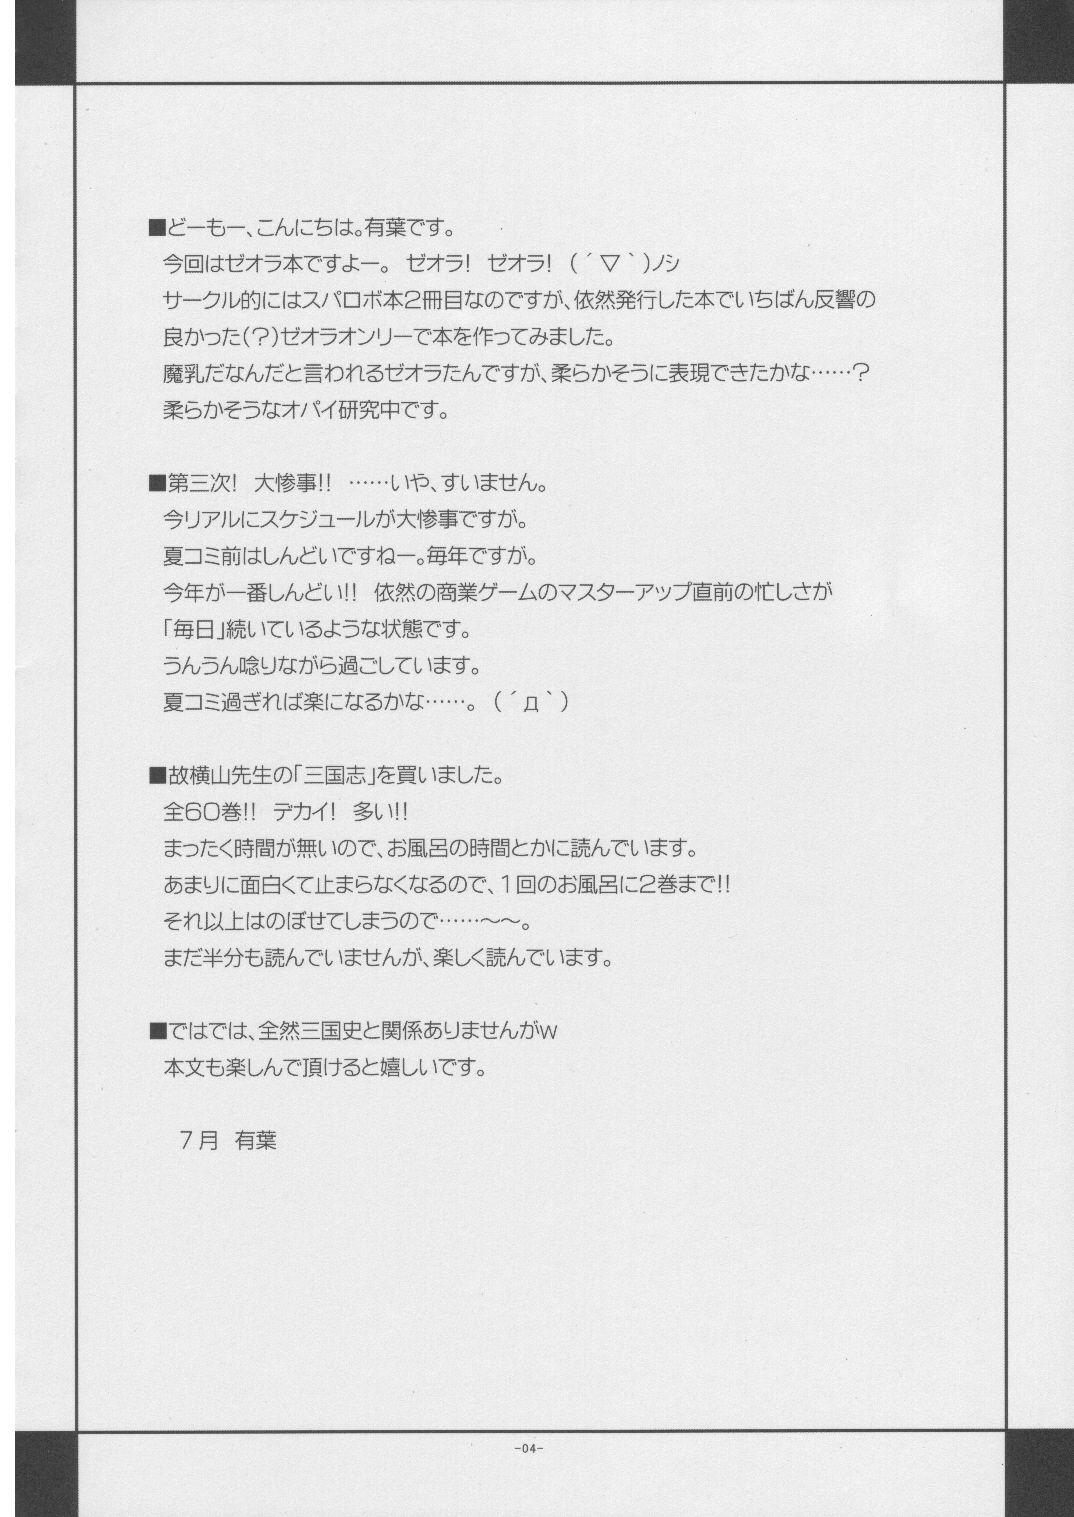 Creamy [Alpha to Yukaina Nakamatachi] Ai-Uchu-Haku (Super Robot Wars) - Super robot wars Concha - Page 3